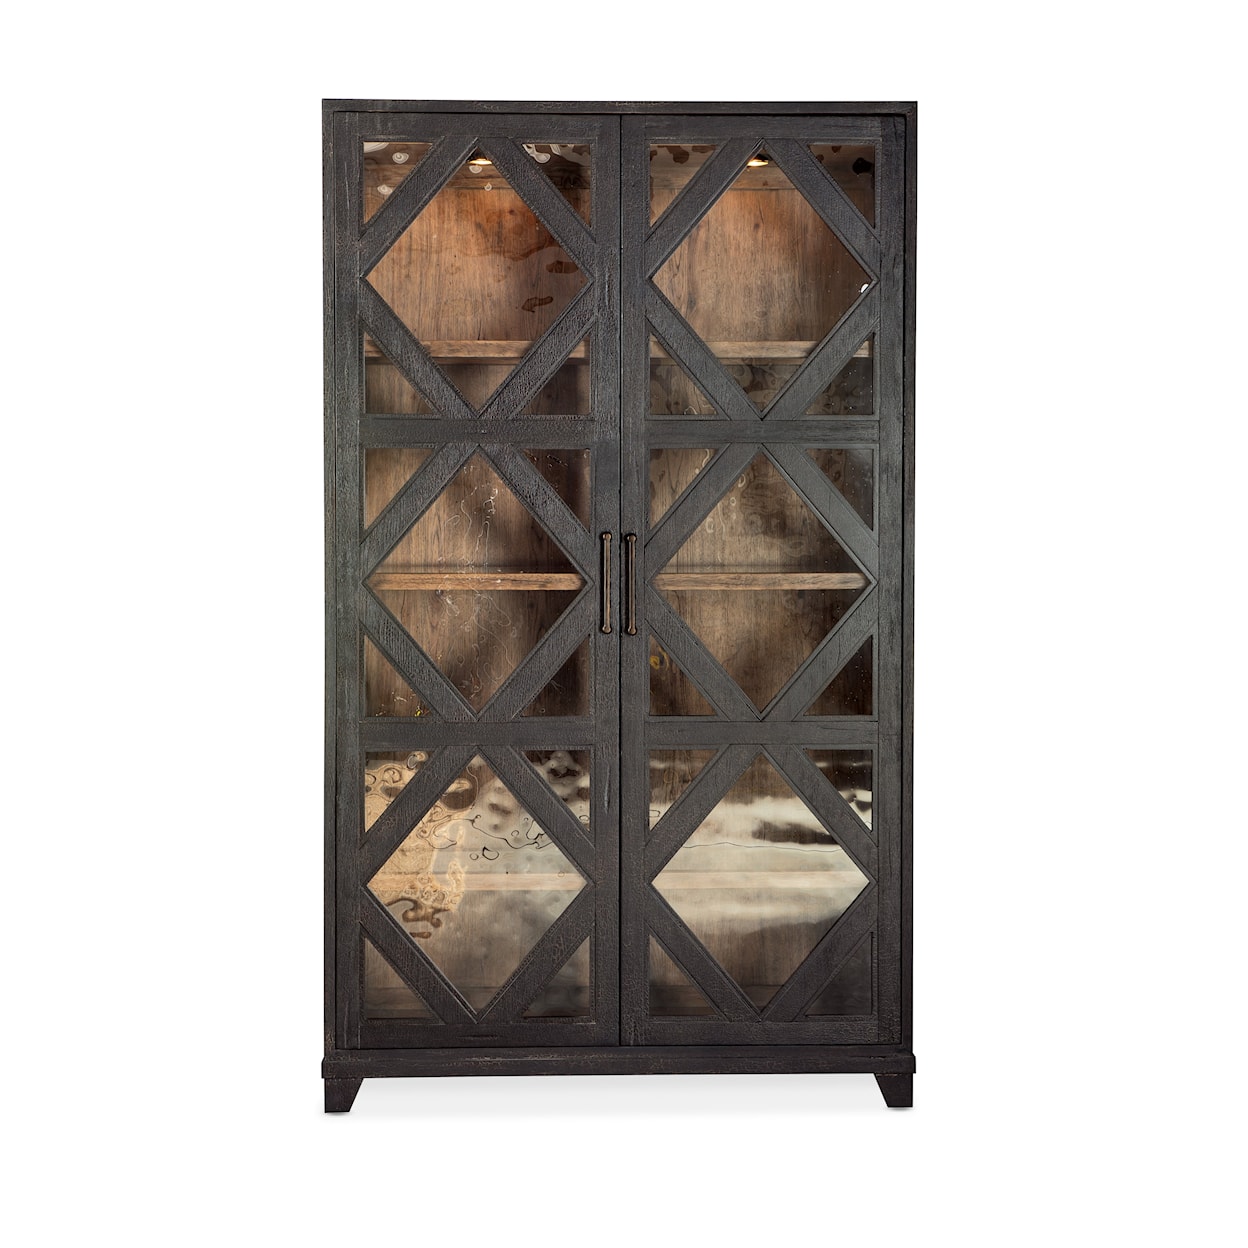 Hooker Furniture Big Sky 3-Shelf Display Cabinet with Built-In Lights